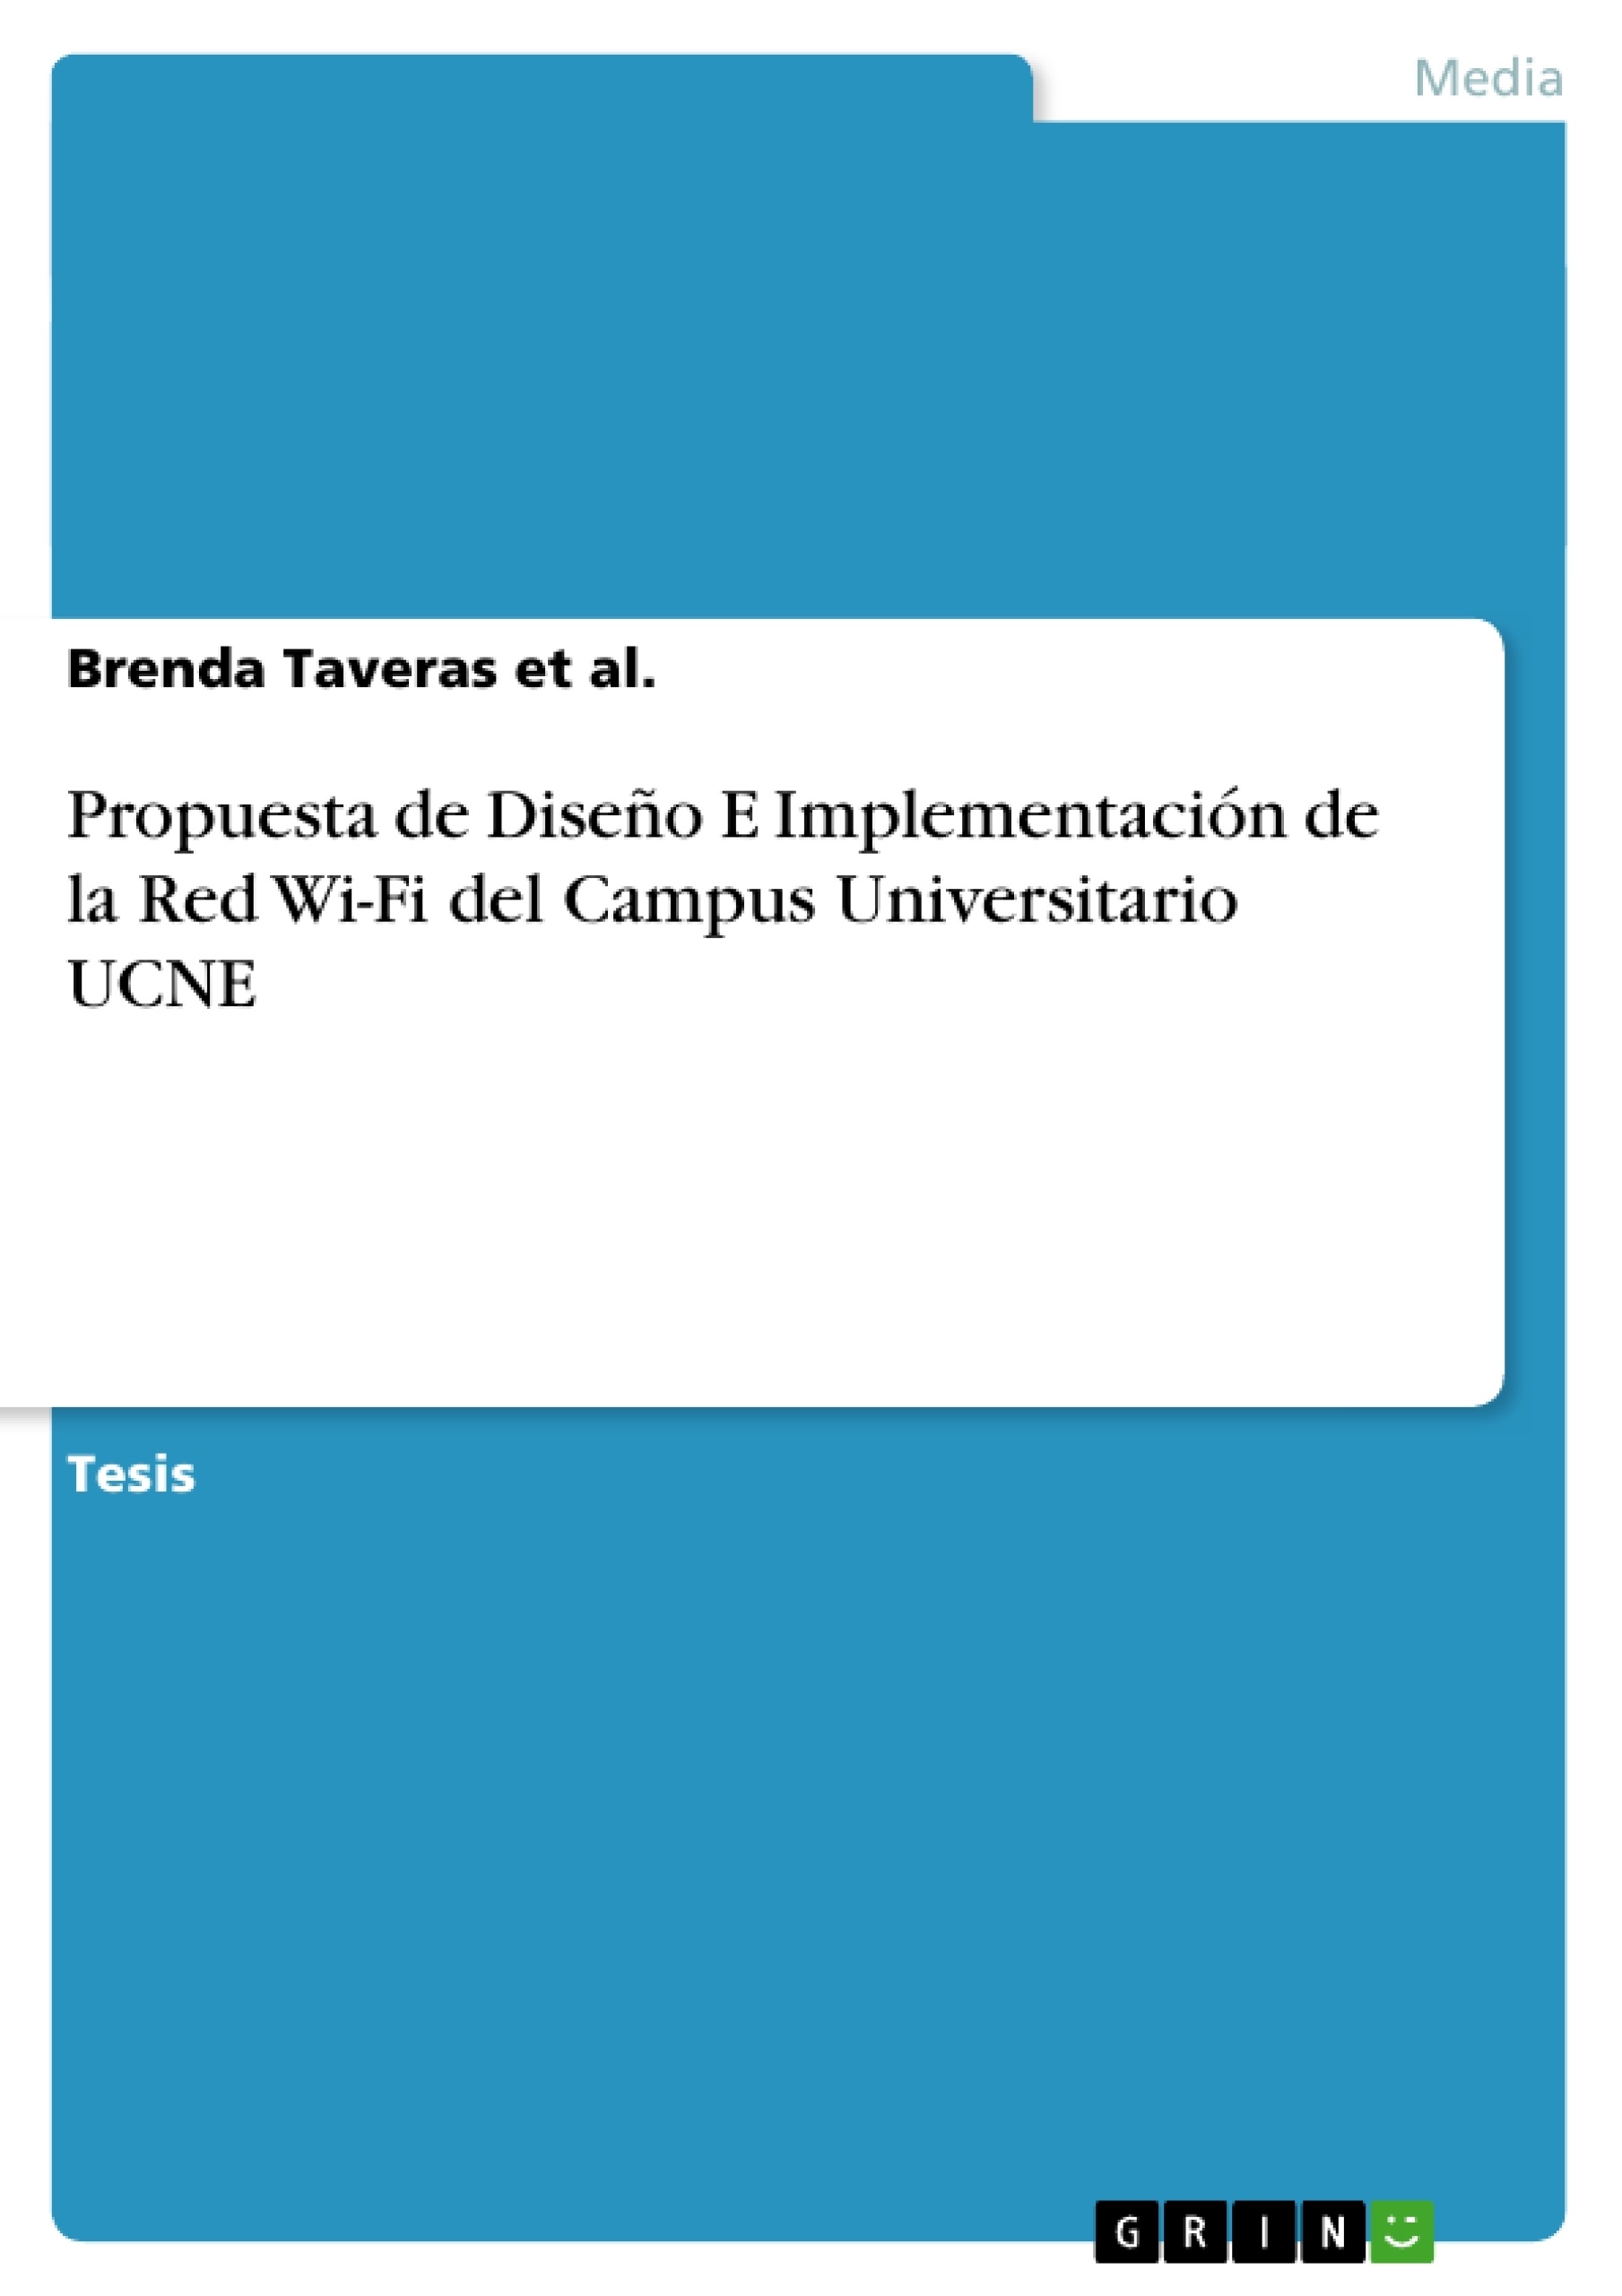 Titel: Propuesta de Diseño E Implementación de la Red Wi-Fi del Campus Universitario UCNE